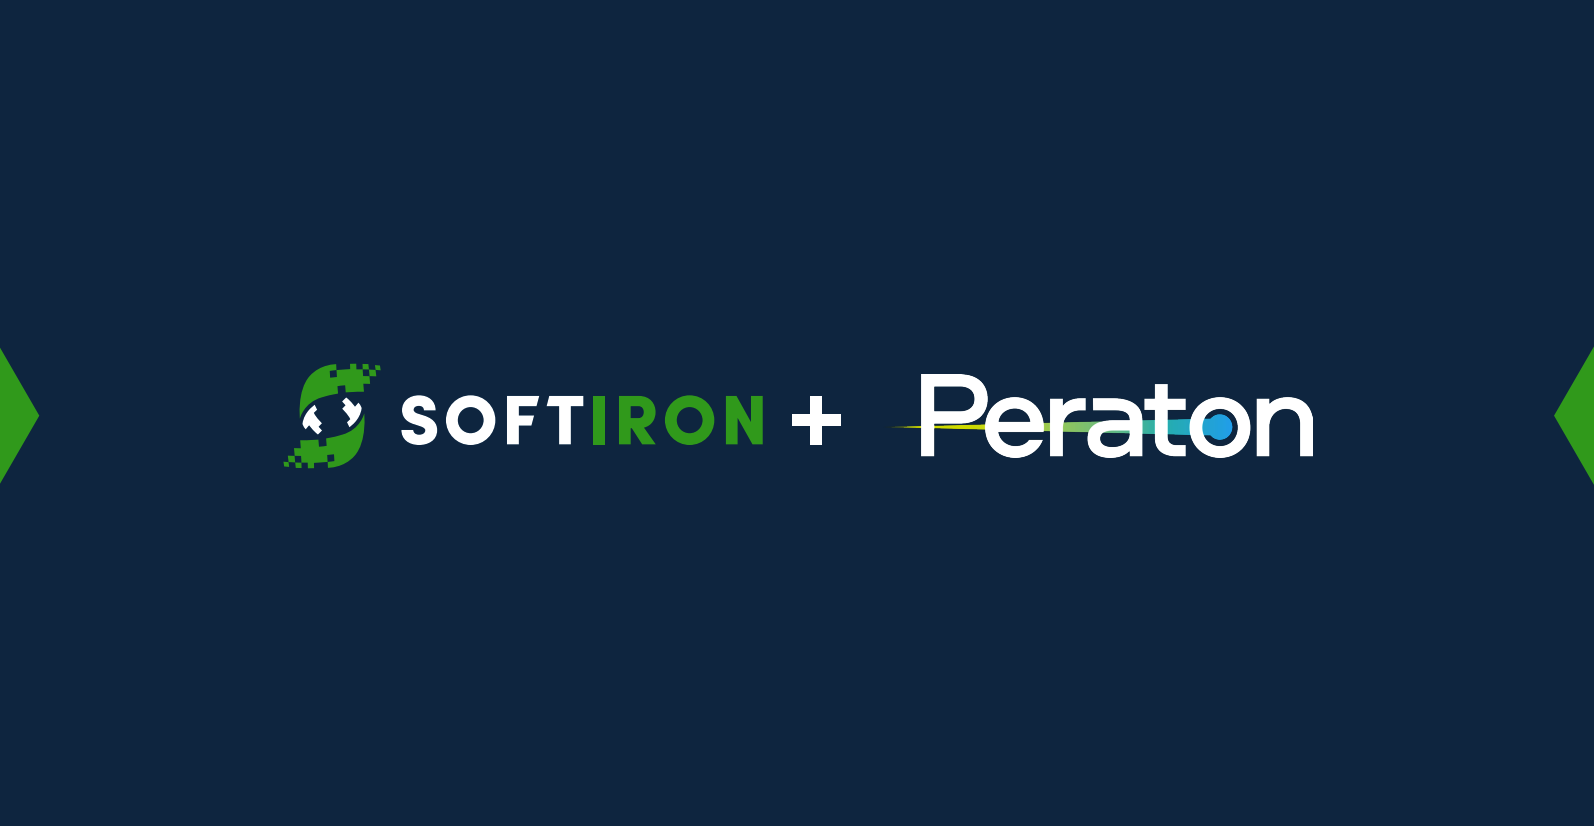 SoftIron + Peraton